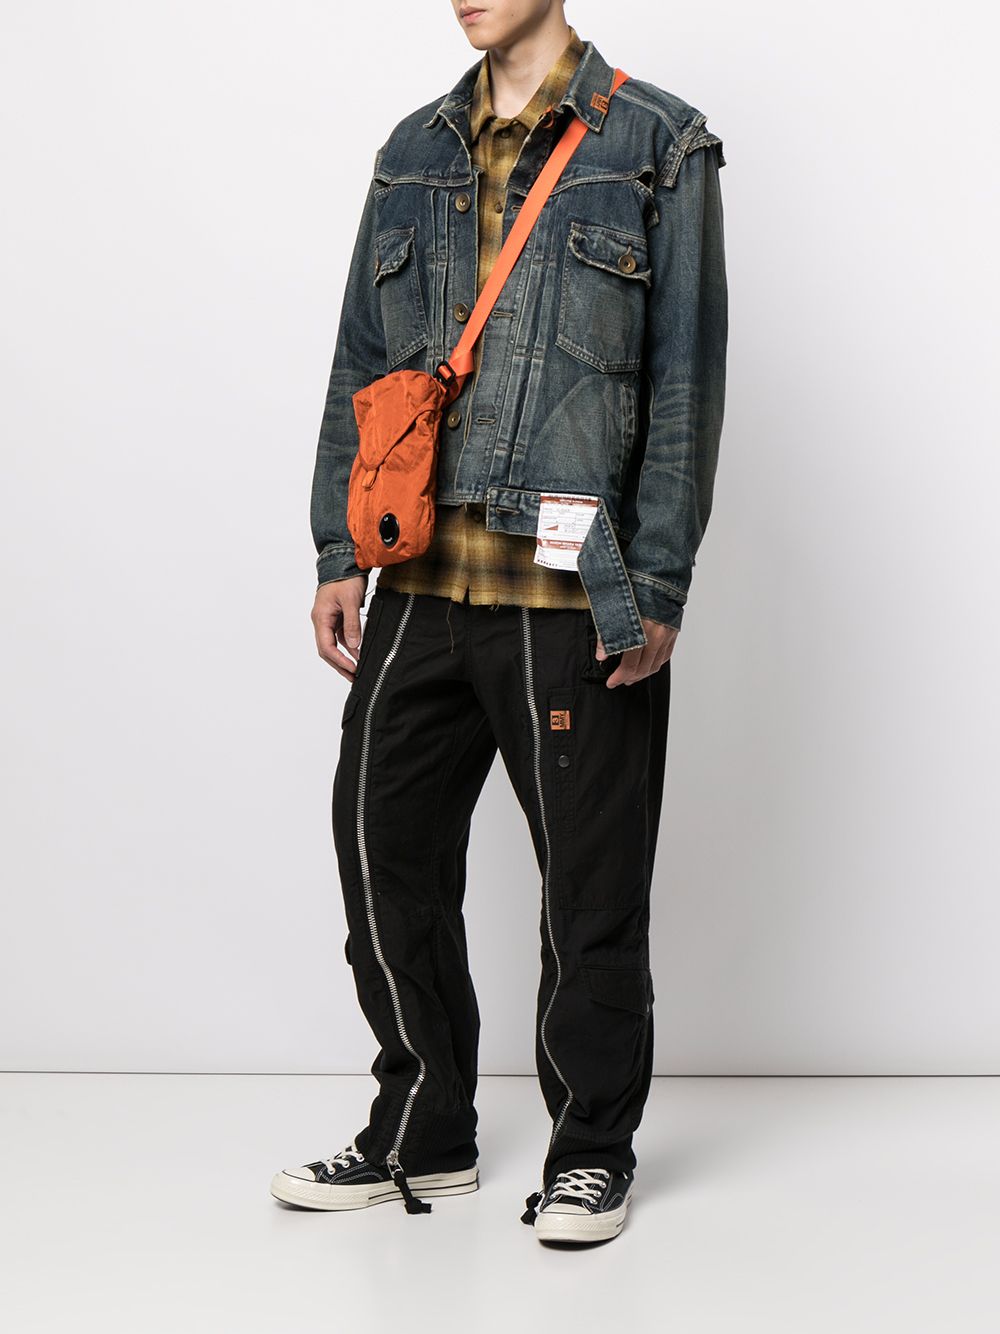 фото Maison mihara yasuhiro джинсовая куртка с карманами и эффектом потертости